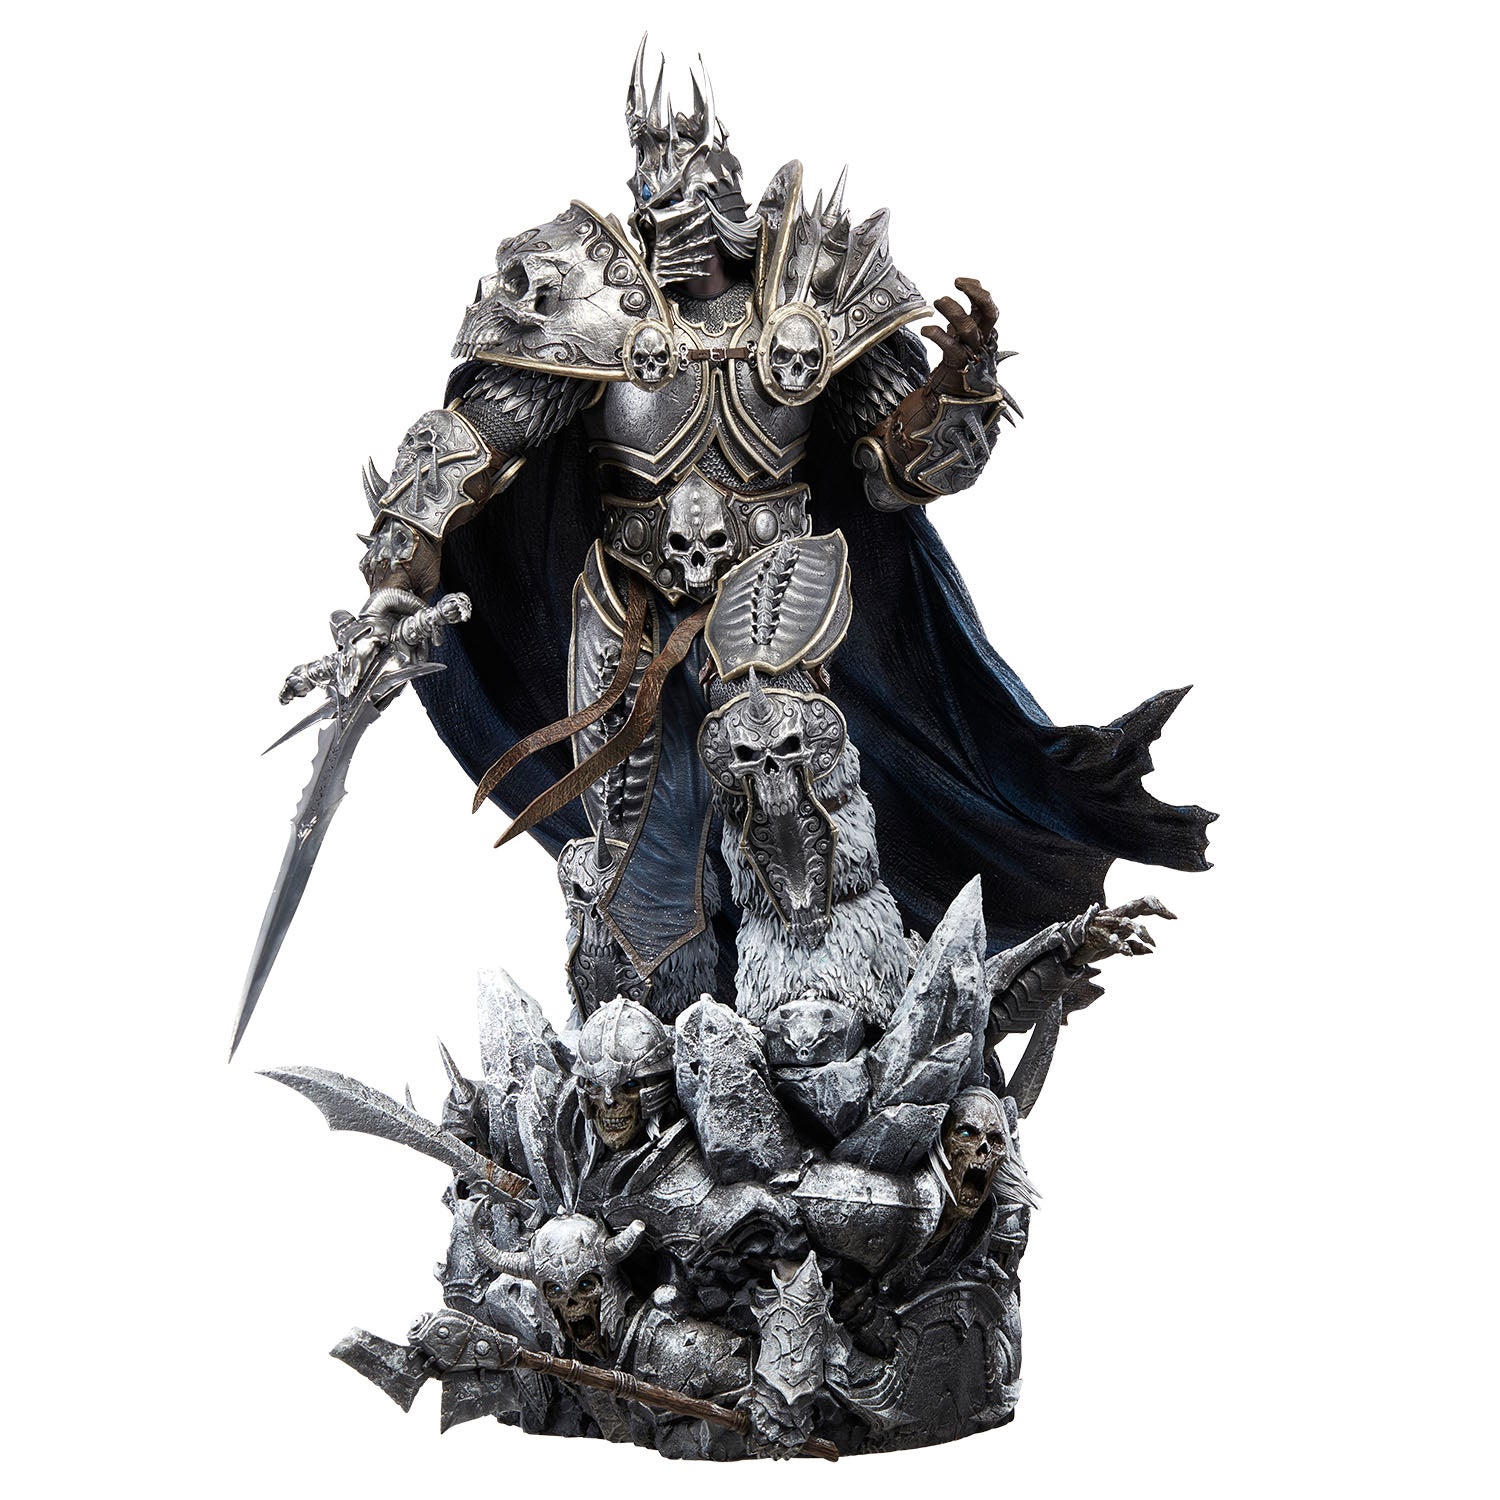 World of Warcraft Lich King Arthas 66cm Premium Statue - Front Left View